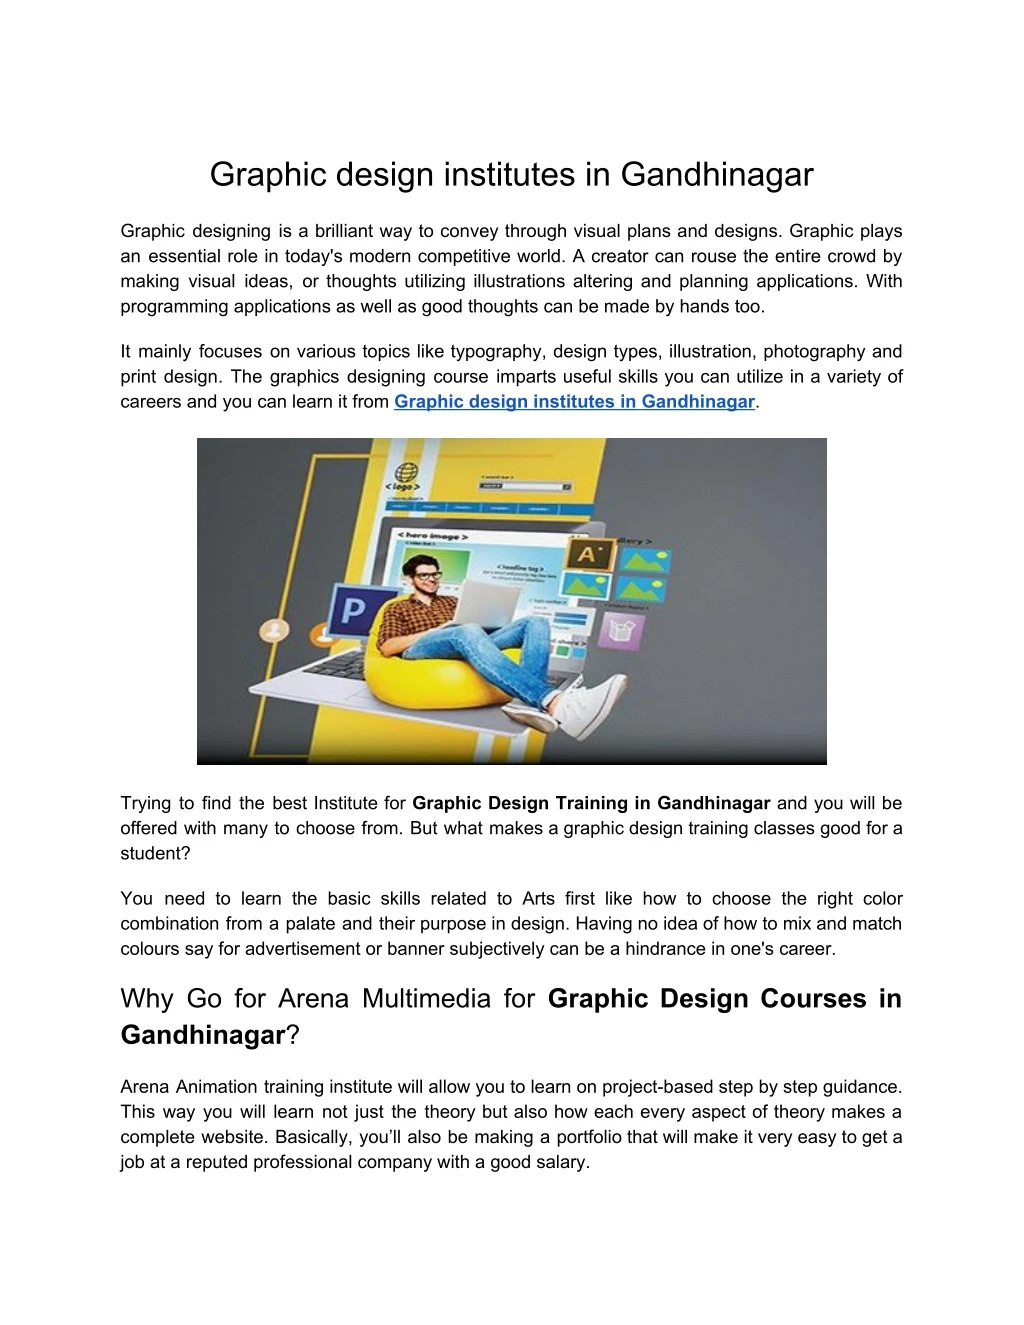 graphic design institutes in gandhinagar